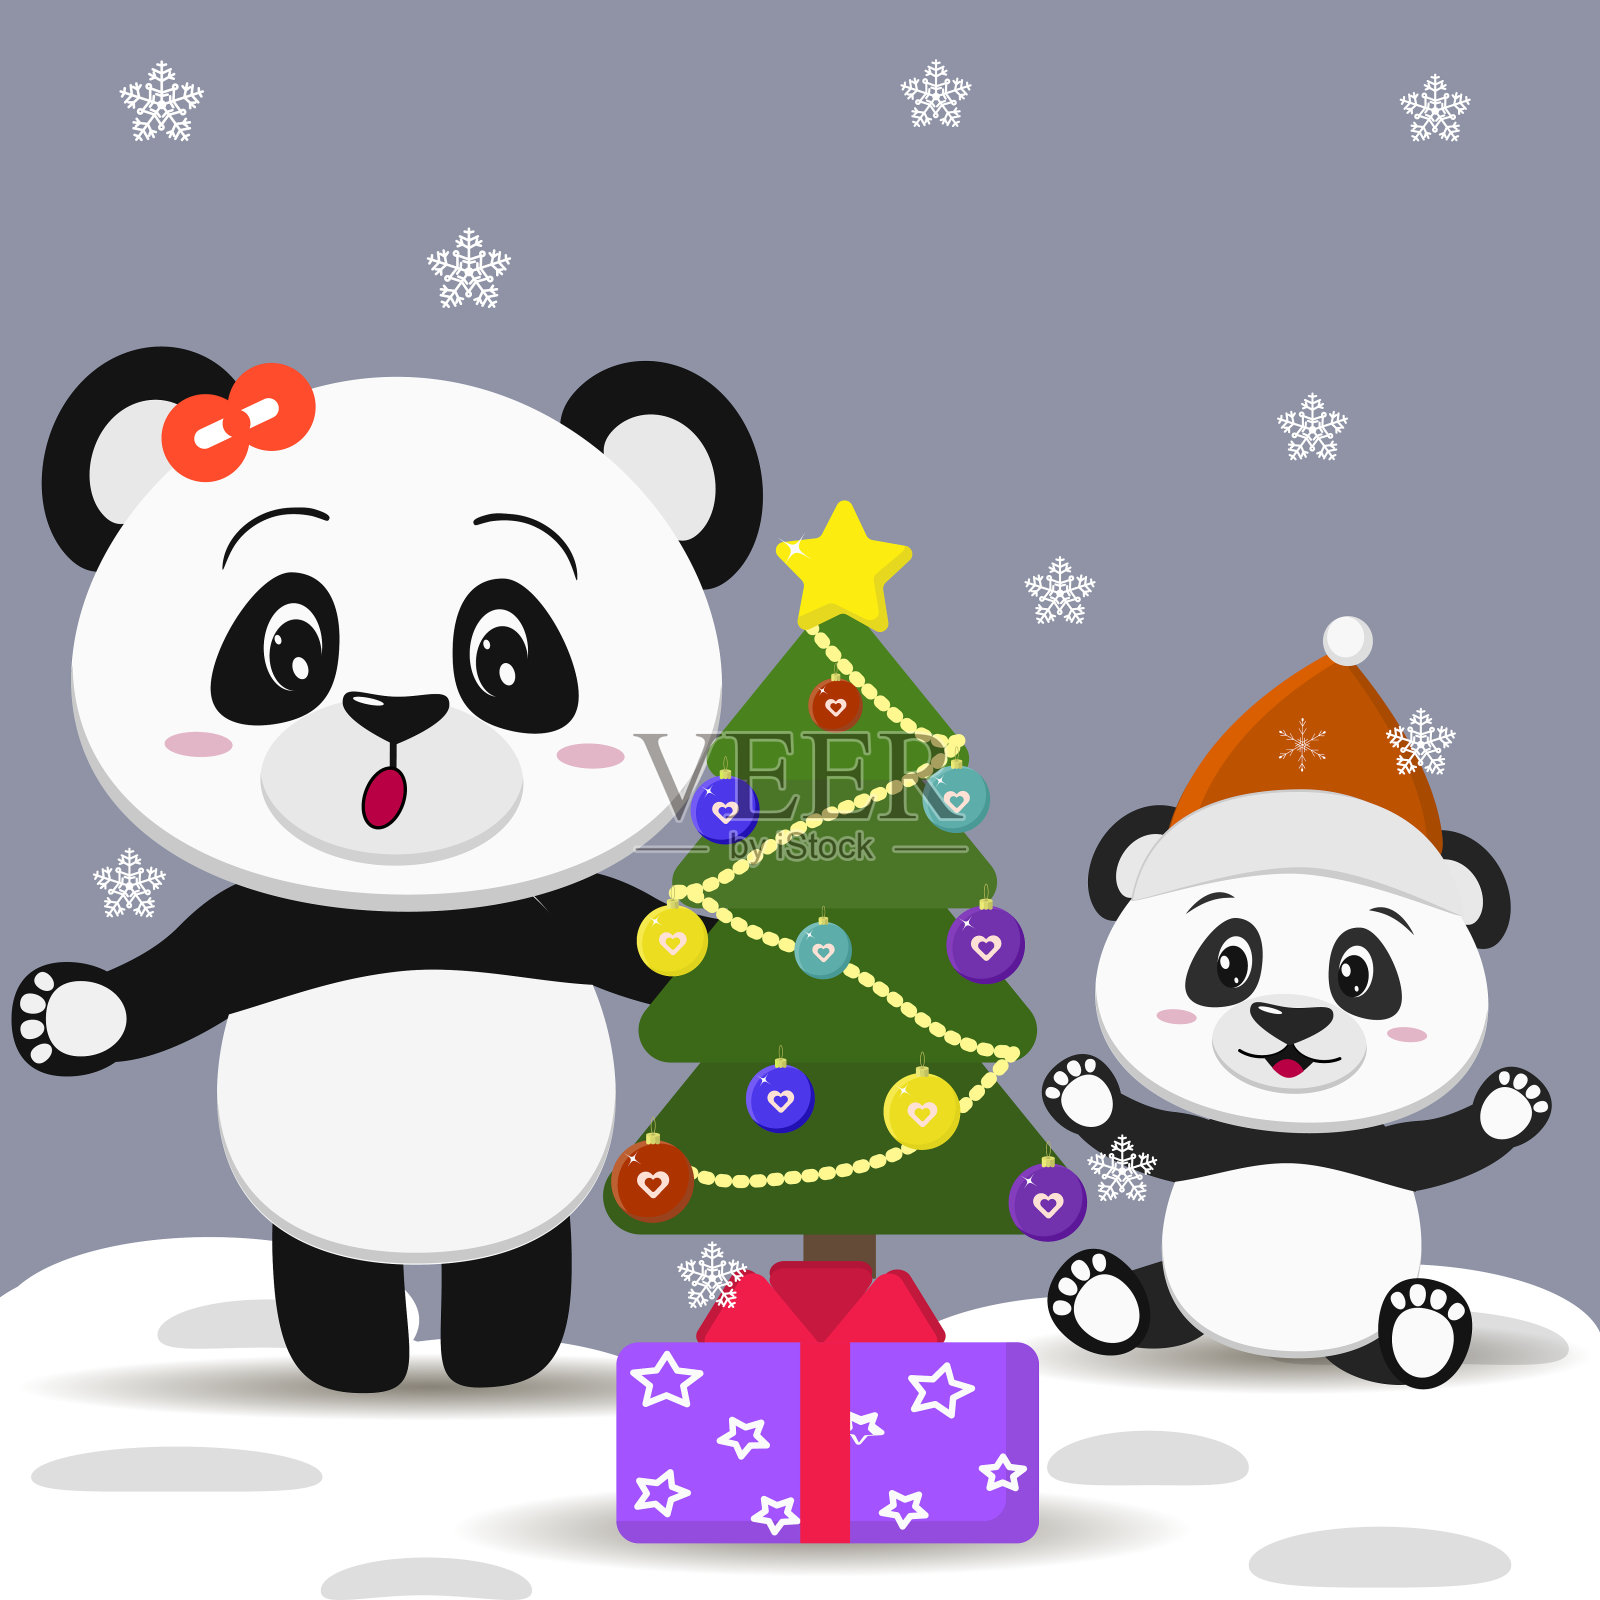 带着蝴蝶结的熊猫和戴着圣诞帽的熊猫宝宝在新年树和礼物盒附近插画图片素材